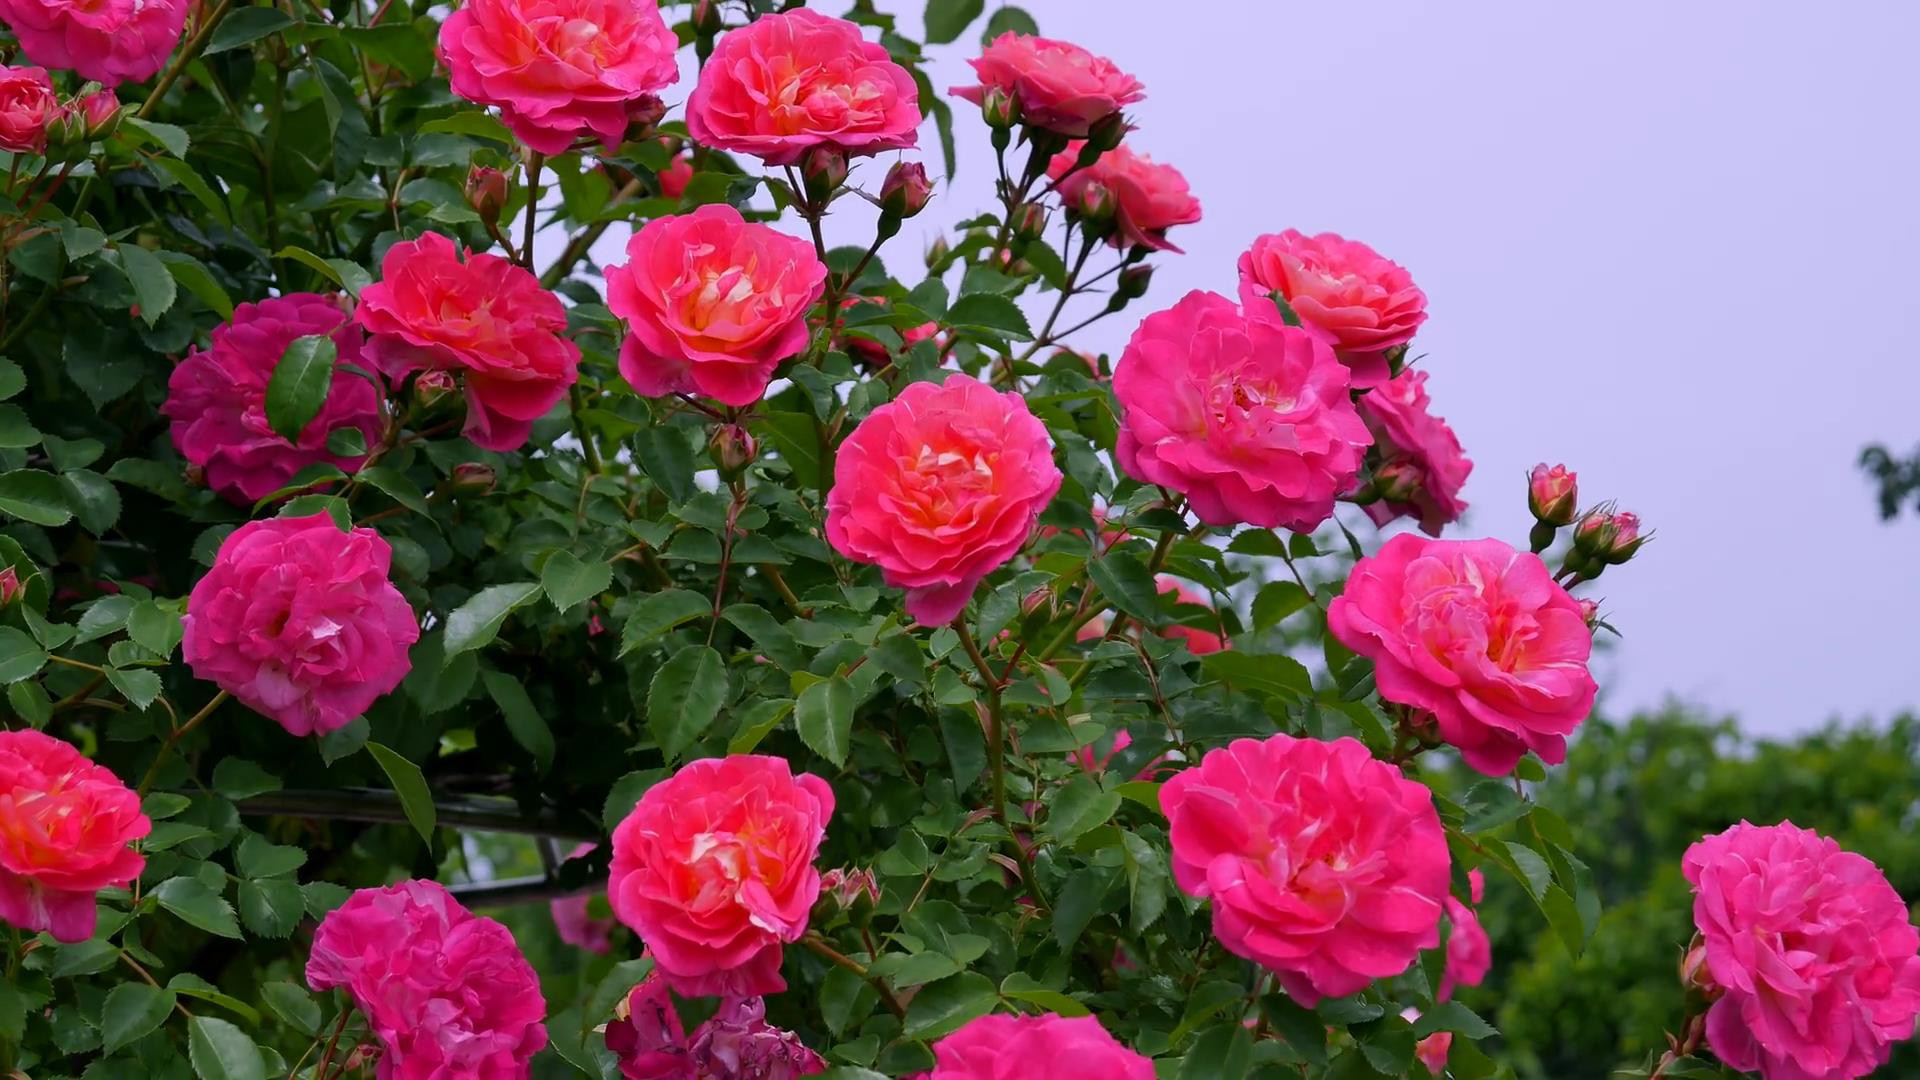 Đến thăm khu vườn trên đảo ở Nhật Bản với 2.600 cây hoa hồng rung rinh trước gió đẹp mê mẩn lòng người - Ảnh 15.